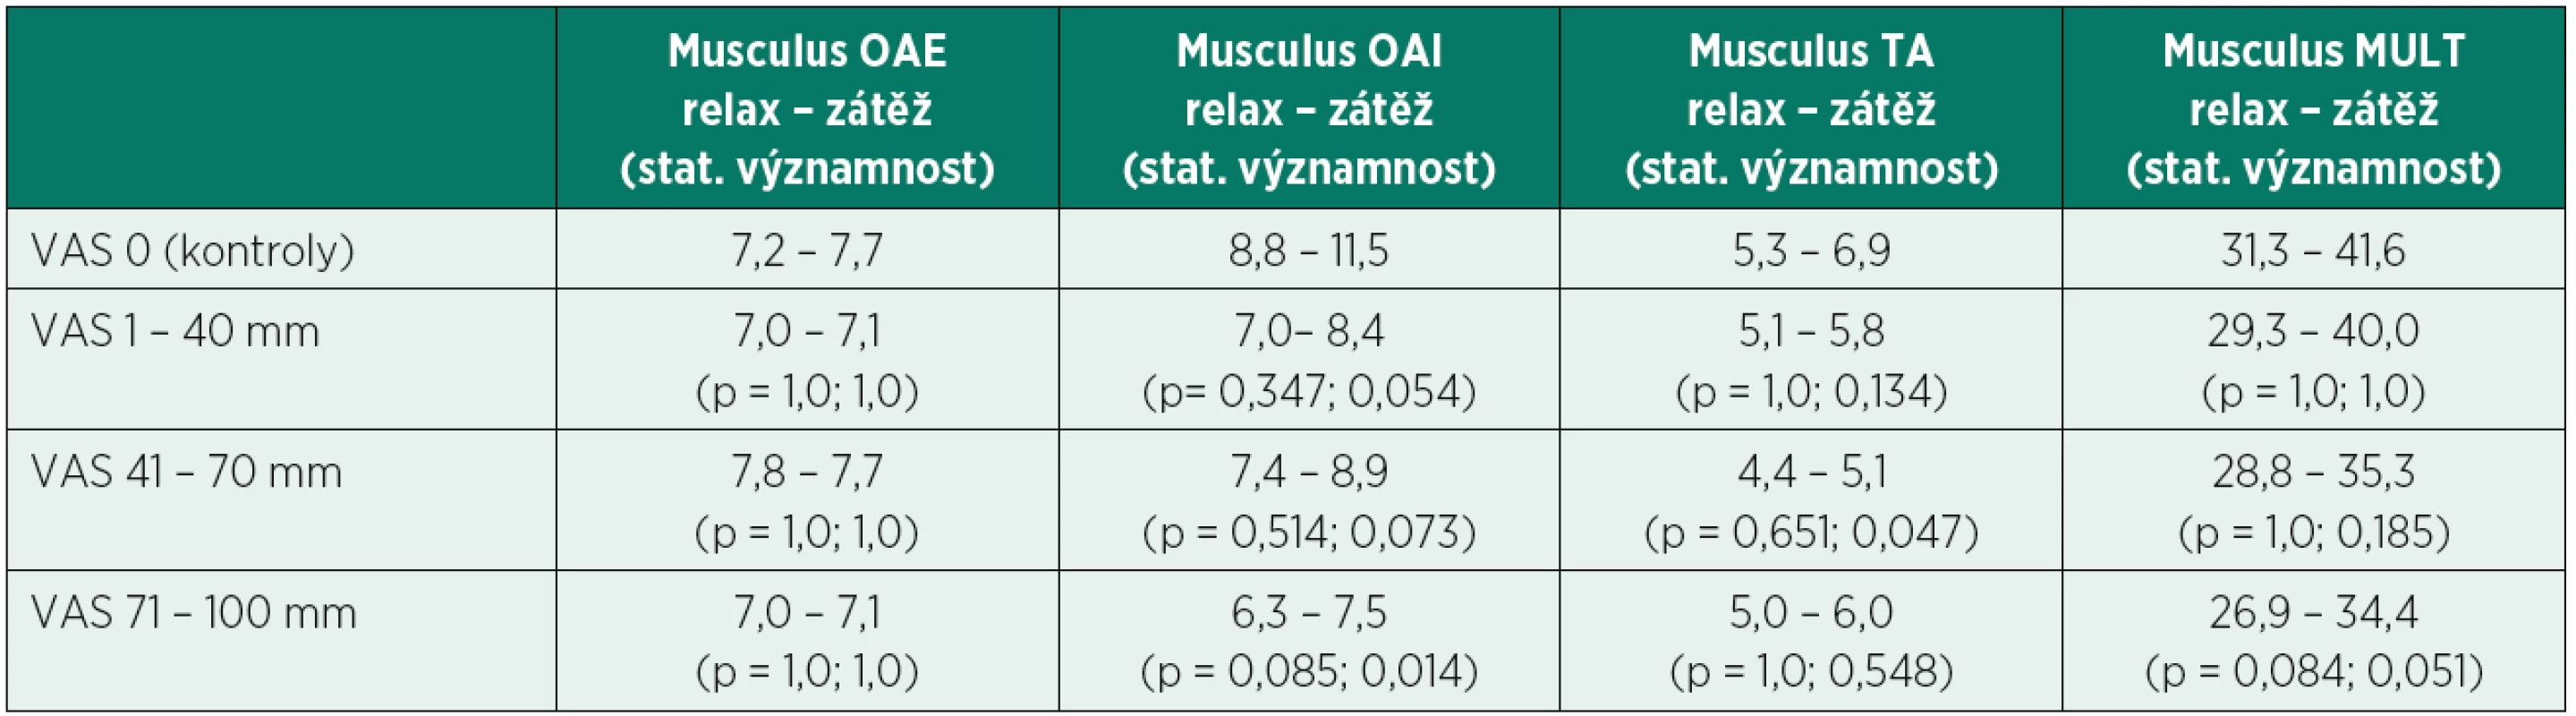 Průměrné hodnoty tloušťky (mm) stabilizačních svalů bederní páteře v klidovém stavu (relax) a v zátěži (zátěž) u kontrolní skupiny (VAS 0) a tří podskupin pacientů s chronickými bolestmi bederní páteře (VAS 1 – 40, 41 – 70, 71 – 100). Statisticky významně nižší hodnoty v tloušťce svalů byly zaznamenány ve dvou kombinacích (p < 0,05).